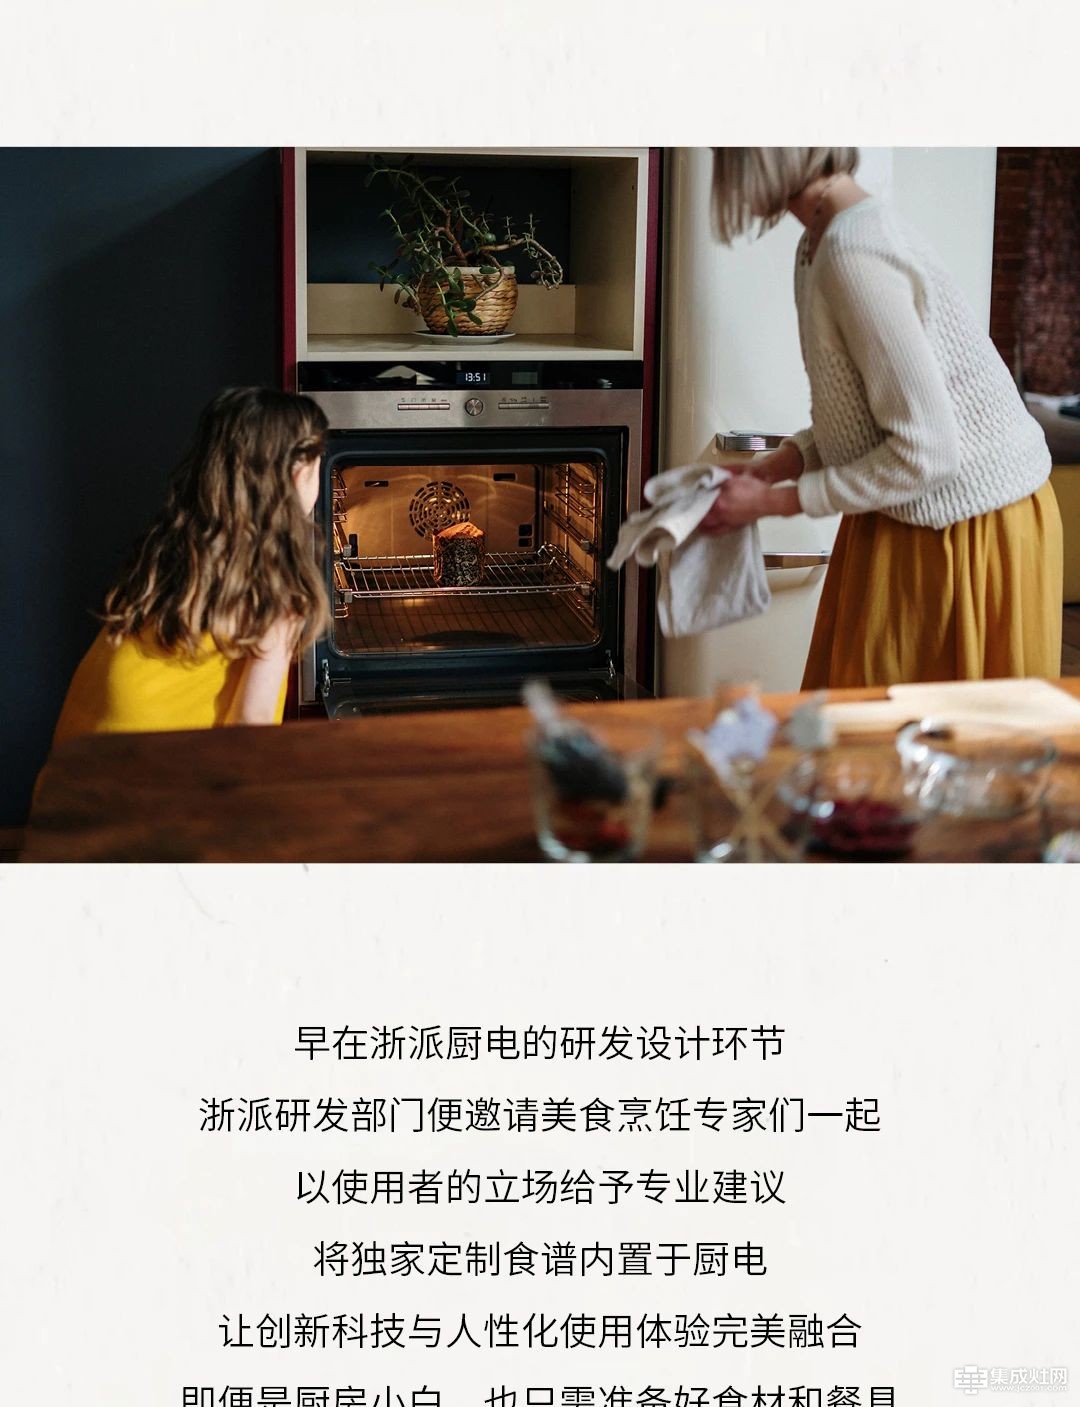 浙派现代系列 “食”尚厨房 悦享烹饪